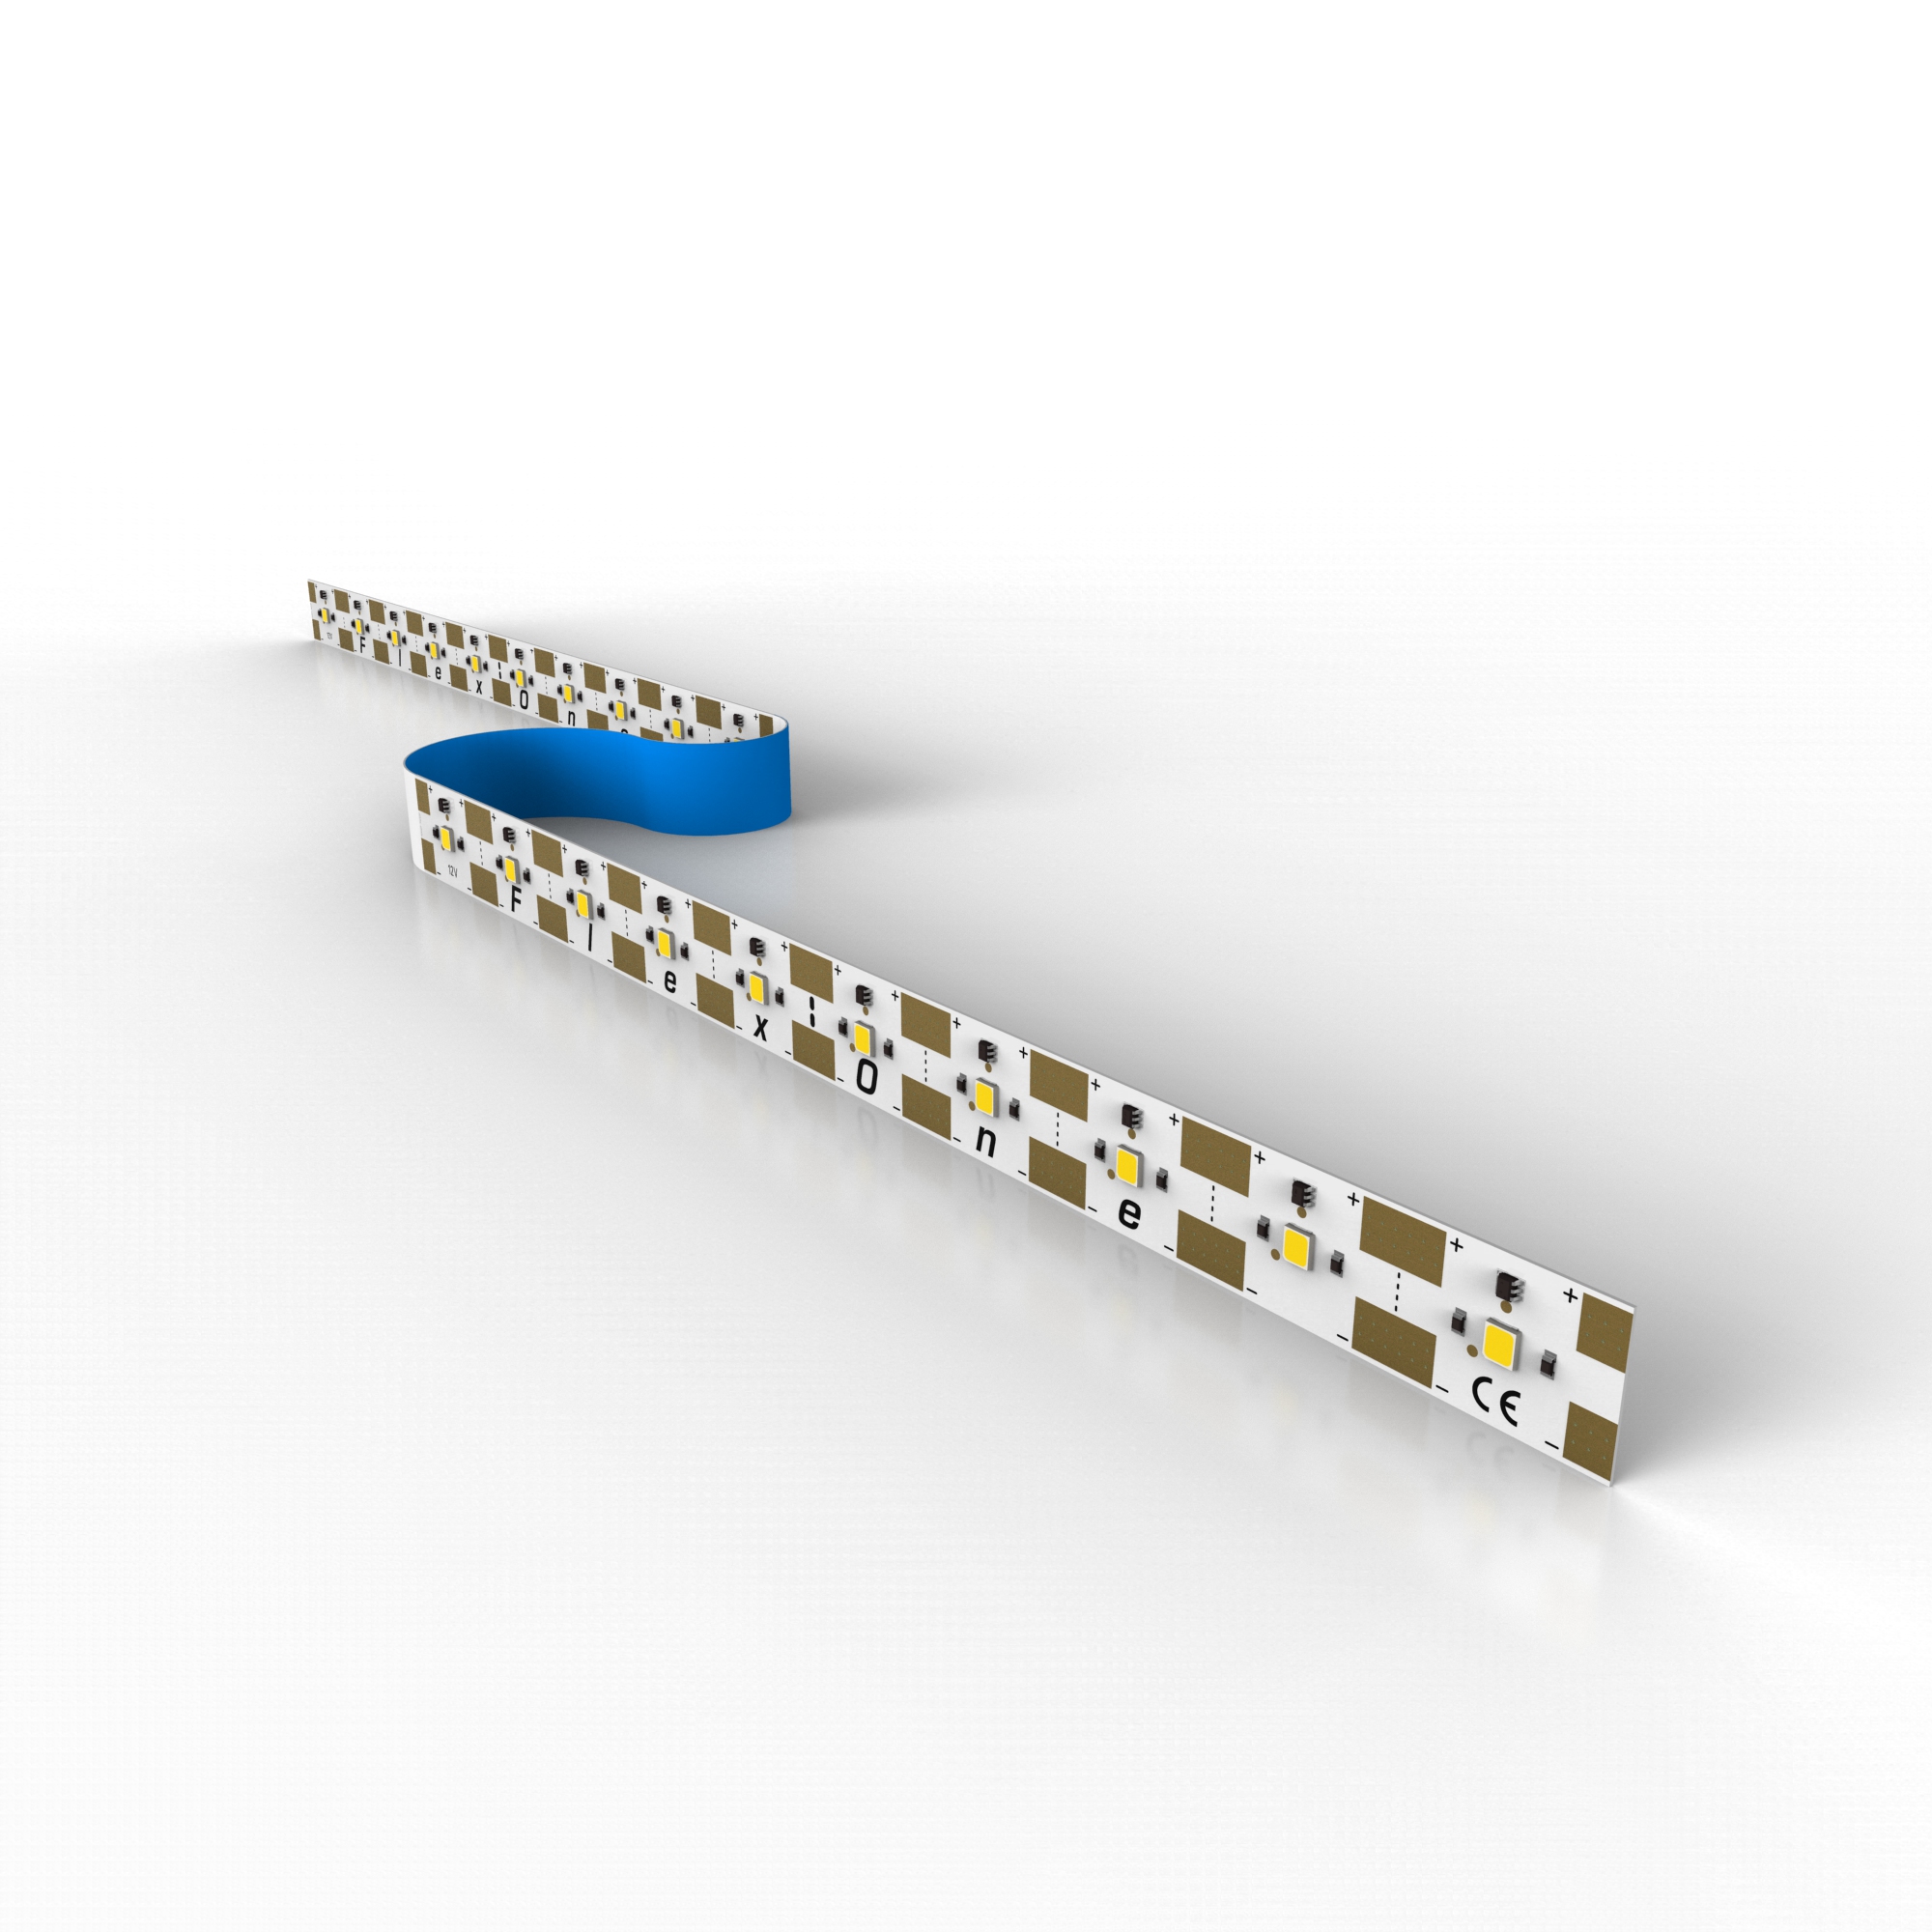 FlexOne3080 Samsung LED Strip neutral white 4000K 12875lm 12V 15 LEDs/ft 16ft/5m reel (785lm & 9.2W/ft)